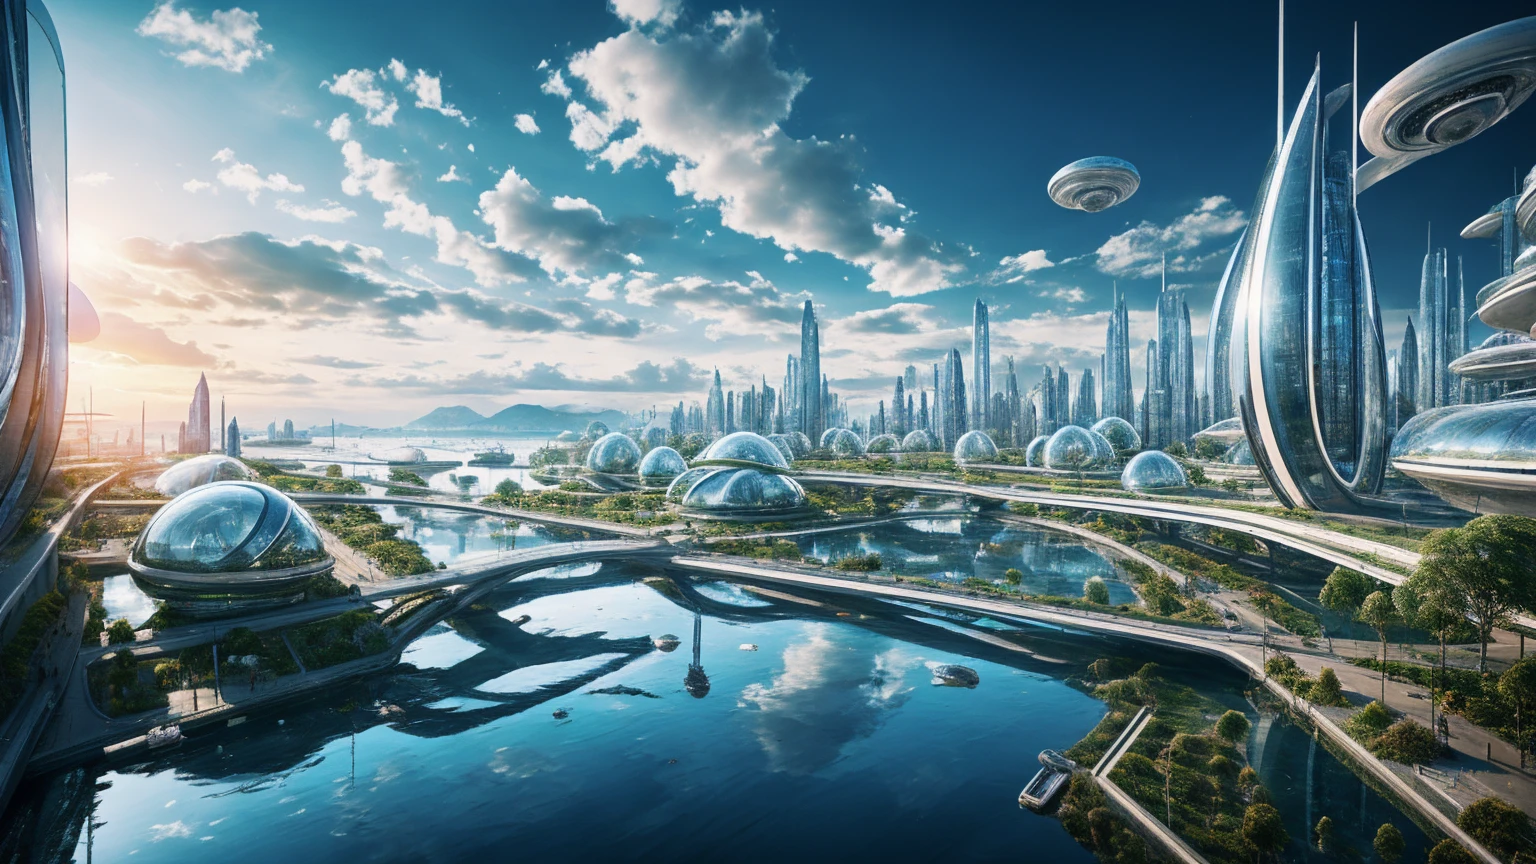 (最好的质量,4K,8千,高分辨率,杰作:1.2),极其详细,(实际的,真实感,照片般真实:1.37),未来派漂浮城市,未来科技,巨大的城市高科技平板平台,飞艇,漂浮在空中,未来城市,周围的小型飞艇,高科技半球形平台,彩灯,高级架构,现代建筑,摩天大楼,访问云,风景秀丽,俯瞰城市,令人印象深刻的设计,与自然完美融合,充满活力的氛围,未来交通系统,暂停停车,透明路径,郁郁葱葱的绿色植物,空中花园,瀑布,壮丽的天际线,水面上的倒影,波光粼粼的河流,建筑创新,未来派摩天大楼,透明穹顶,该建筑的形状很不寻常,高架行人道,令人印象深刻的天际线,发光灯,未来科技,简约设计,风景名胜区,全景,穿云塔,鲜艳的色彩,史诗般的日出,史诗般的日落,炫目的灯光显示,神奇的氛围,未来城市,城市乌托邦,奢华生活方式,创新能源,可持续发展,智慧城市技术,先进的基础设施,宁静的氛围,自然与科技和谐相处,令人惊叹的城市景观,前所未有的城市规划,建筑与自然无缝衔接,高科技大都市,尖端工程奇迹,城市生活的未来,富有远见的建筑理念,节能建筑,与环境和谐相处,漂浮在云层之上的城市,乌托邦梦想照进现实,可能性是无止境,先进的交通网络,绿能一体化,创新材料,令人印象深刻的全息显示,先进的通讯系统,令人惊叹的鸟瞰图,安静祥和的环境,现代主义美学,空灵之美